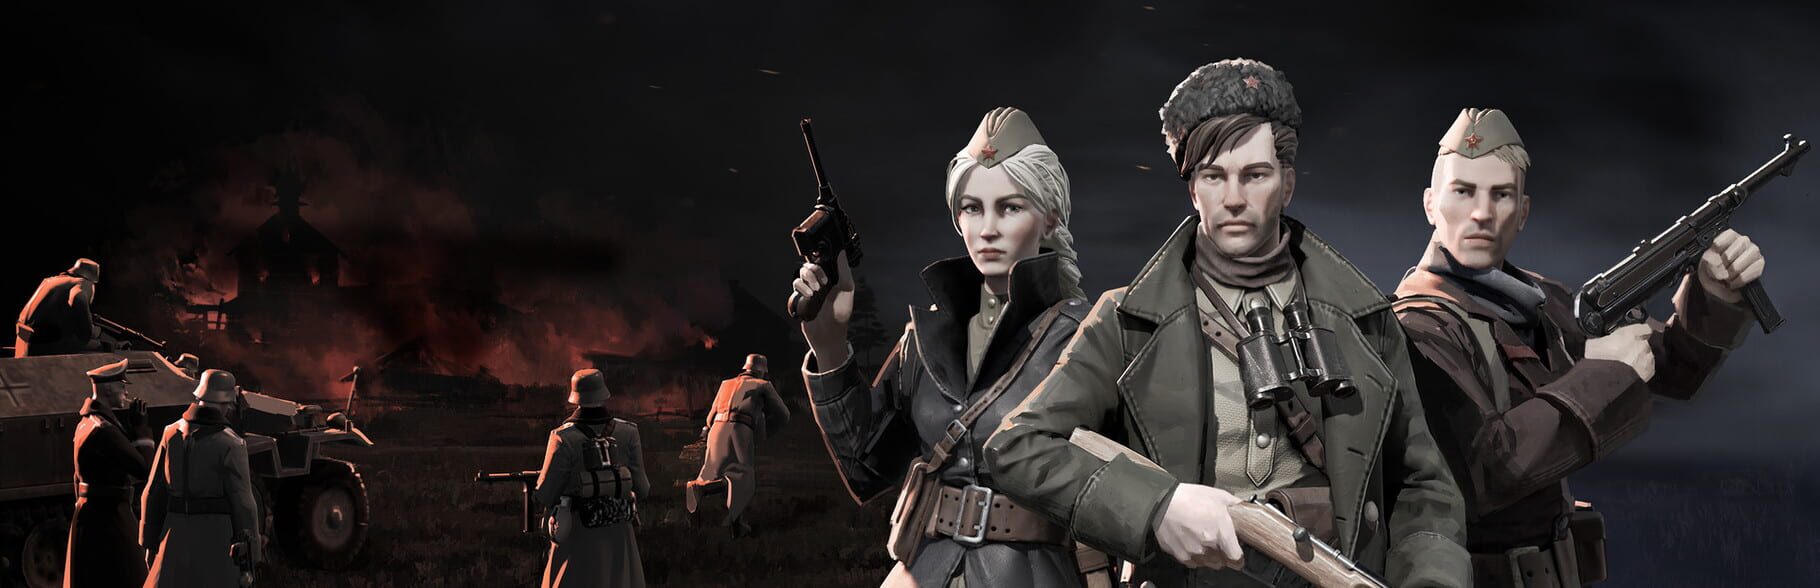 Partisans 1941 Image